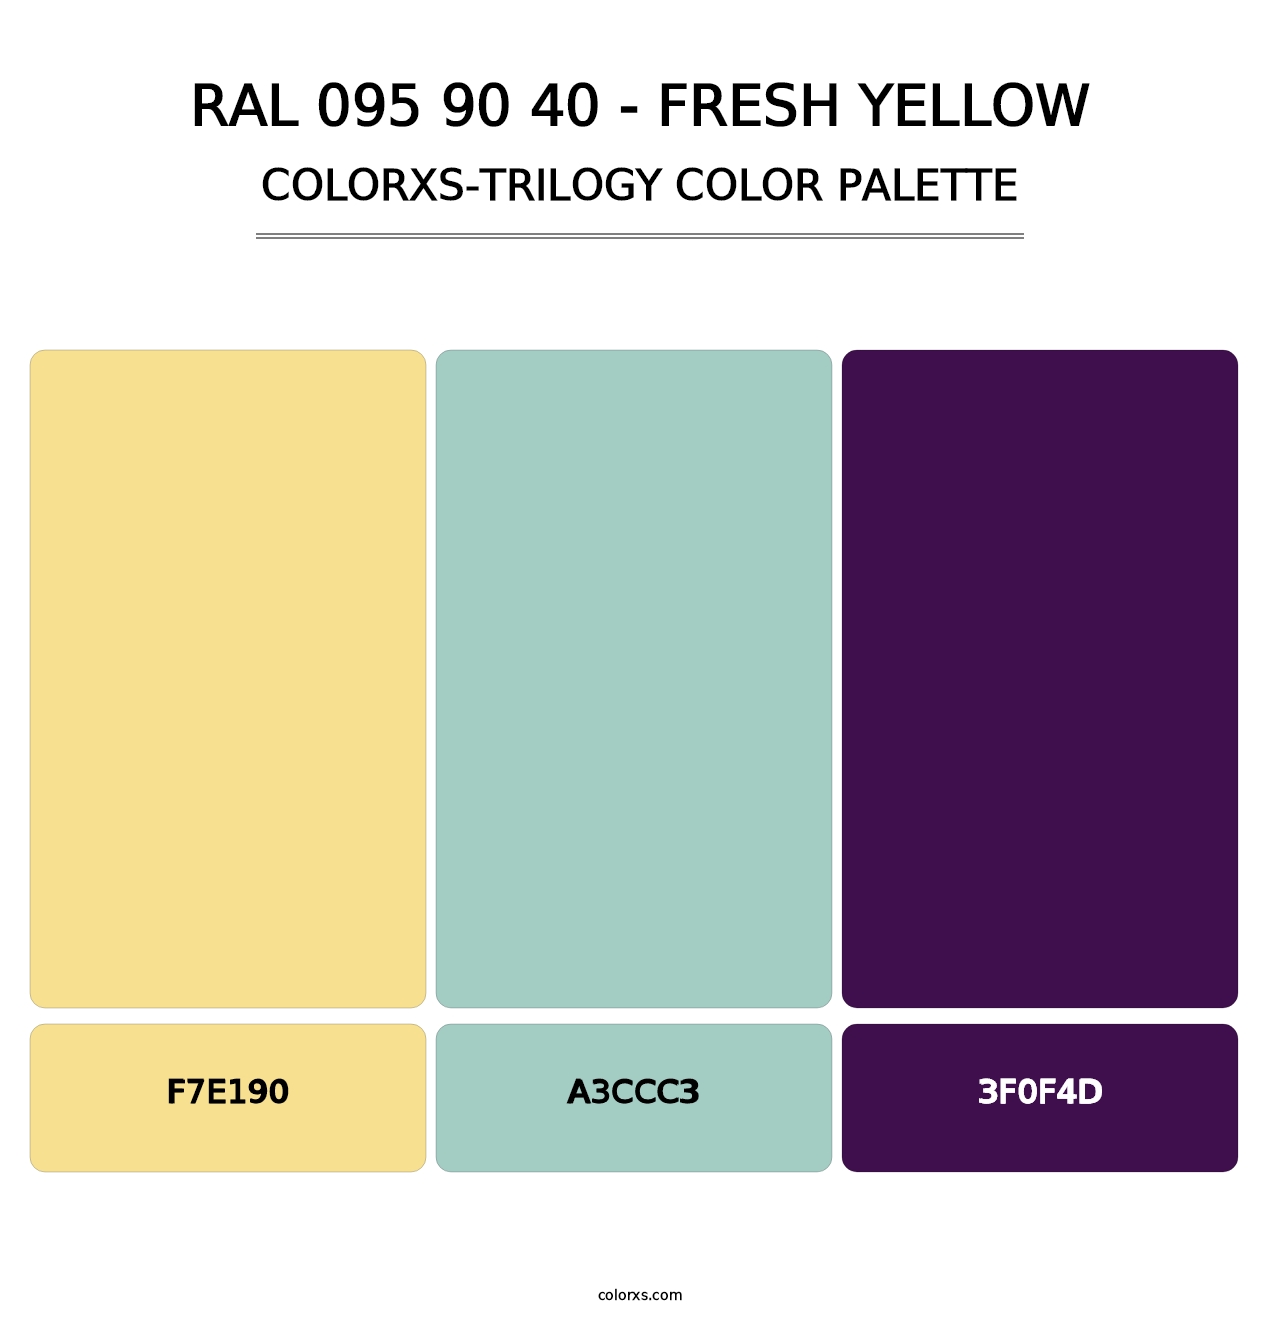 RAL 095 90 40 - Fresh Yellow - Colorxs Trilogy Palette